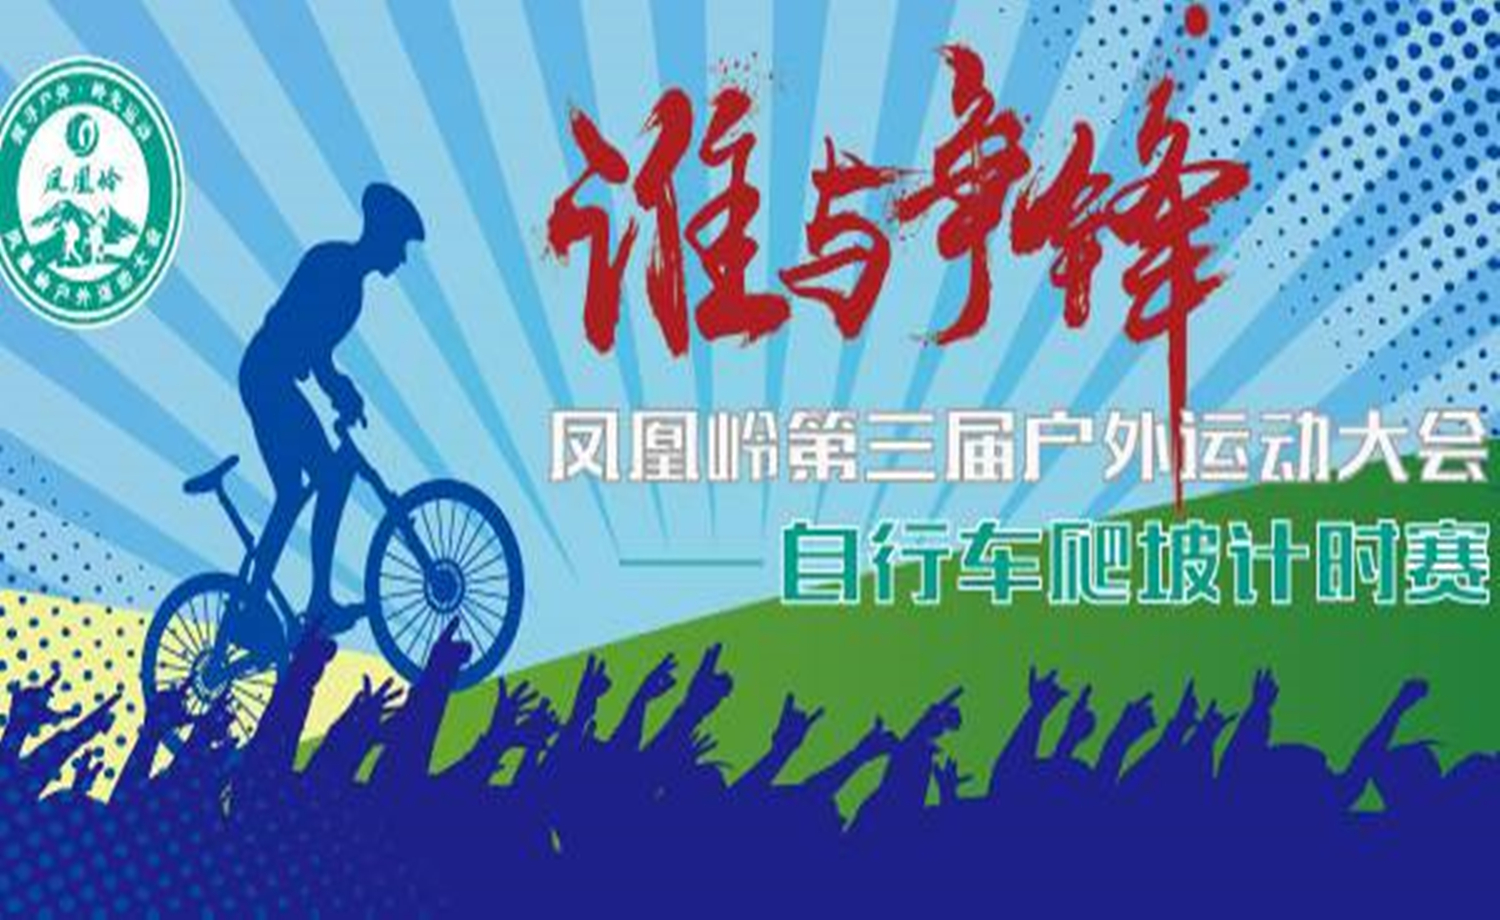 凤凰岭第三届户外运动大会自行车爬坡计时赛